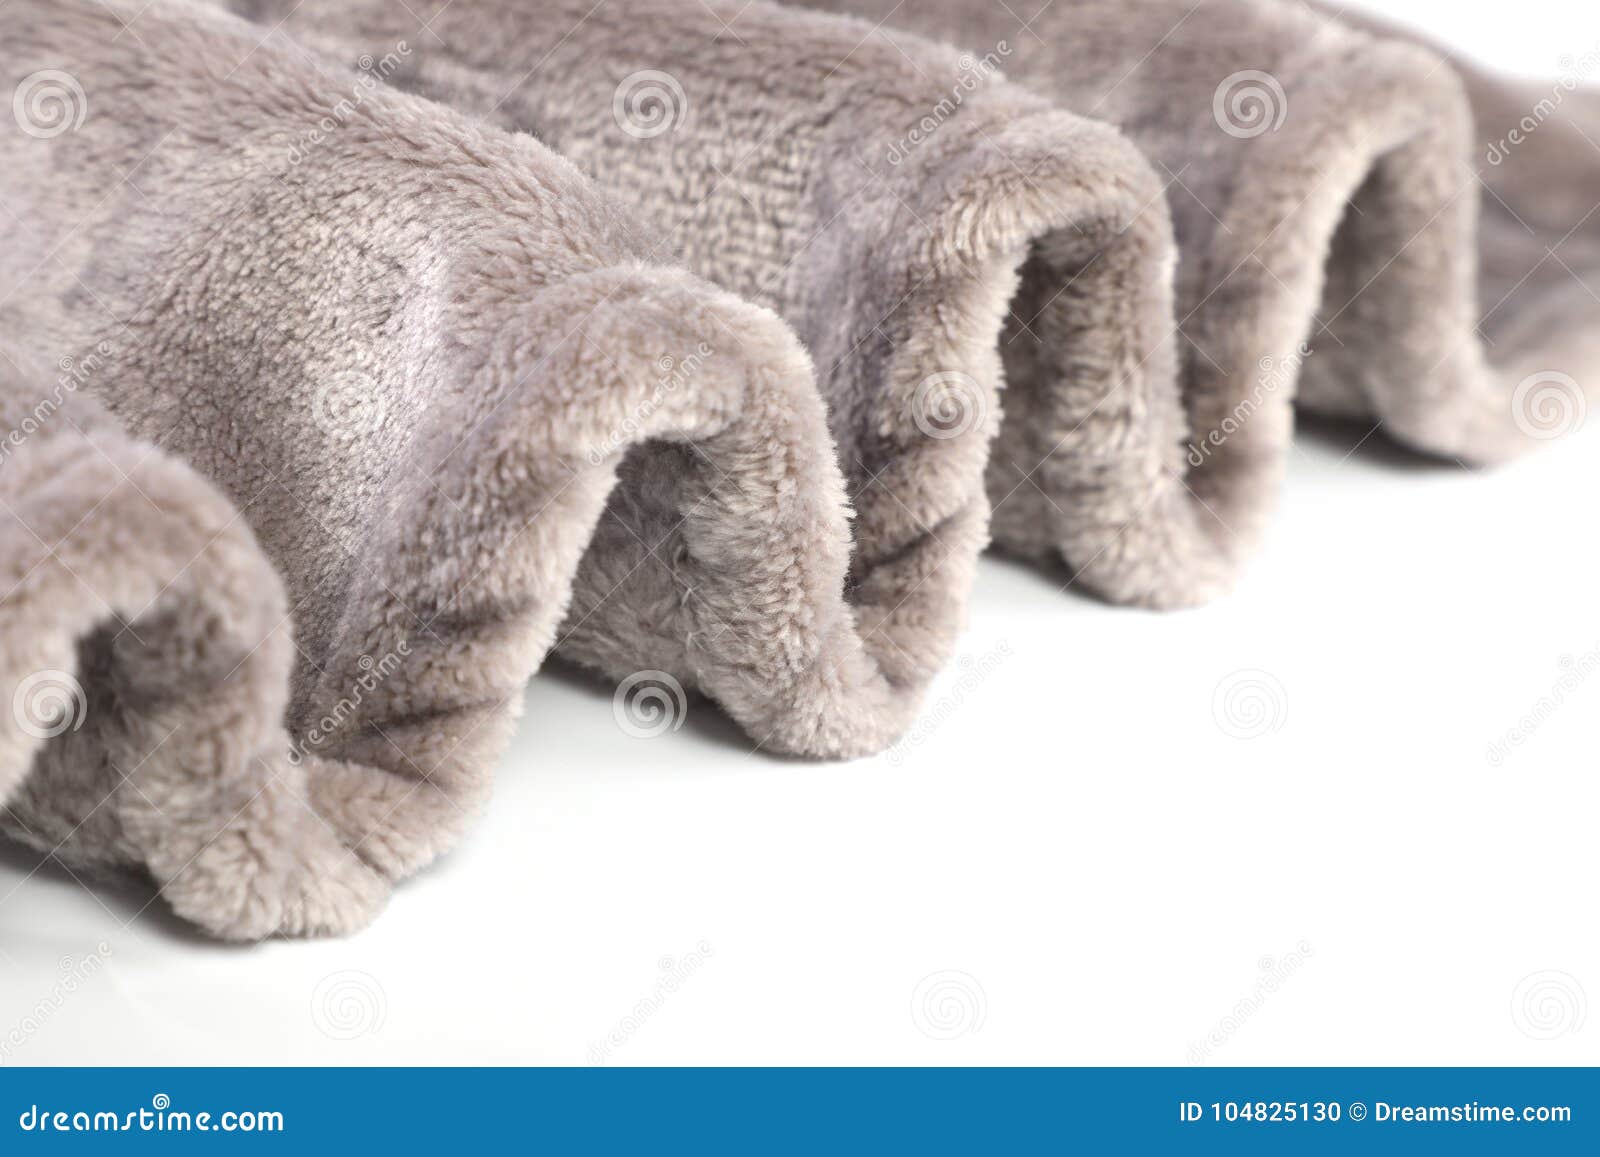 Coperta Pelosa Dell'animale Domestico Caldo Di Inverno Fotografia Stock -  Immagine di marrone, caldo: 104825130